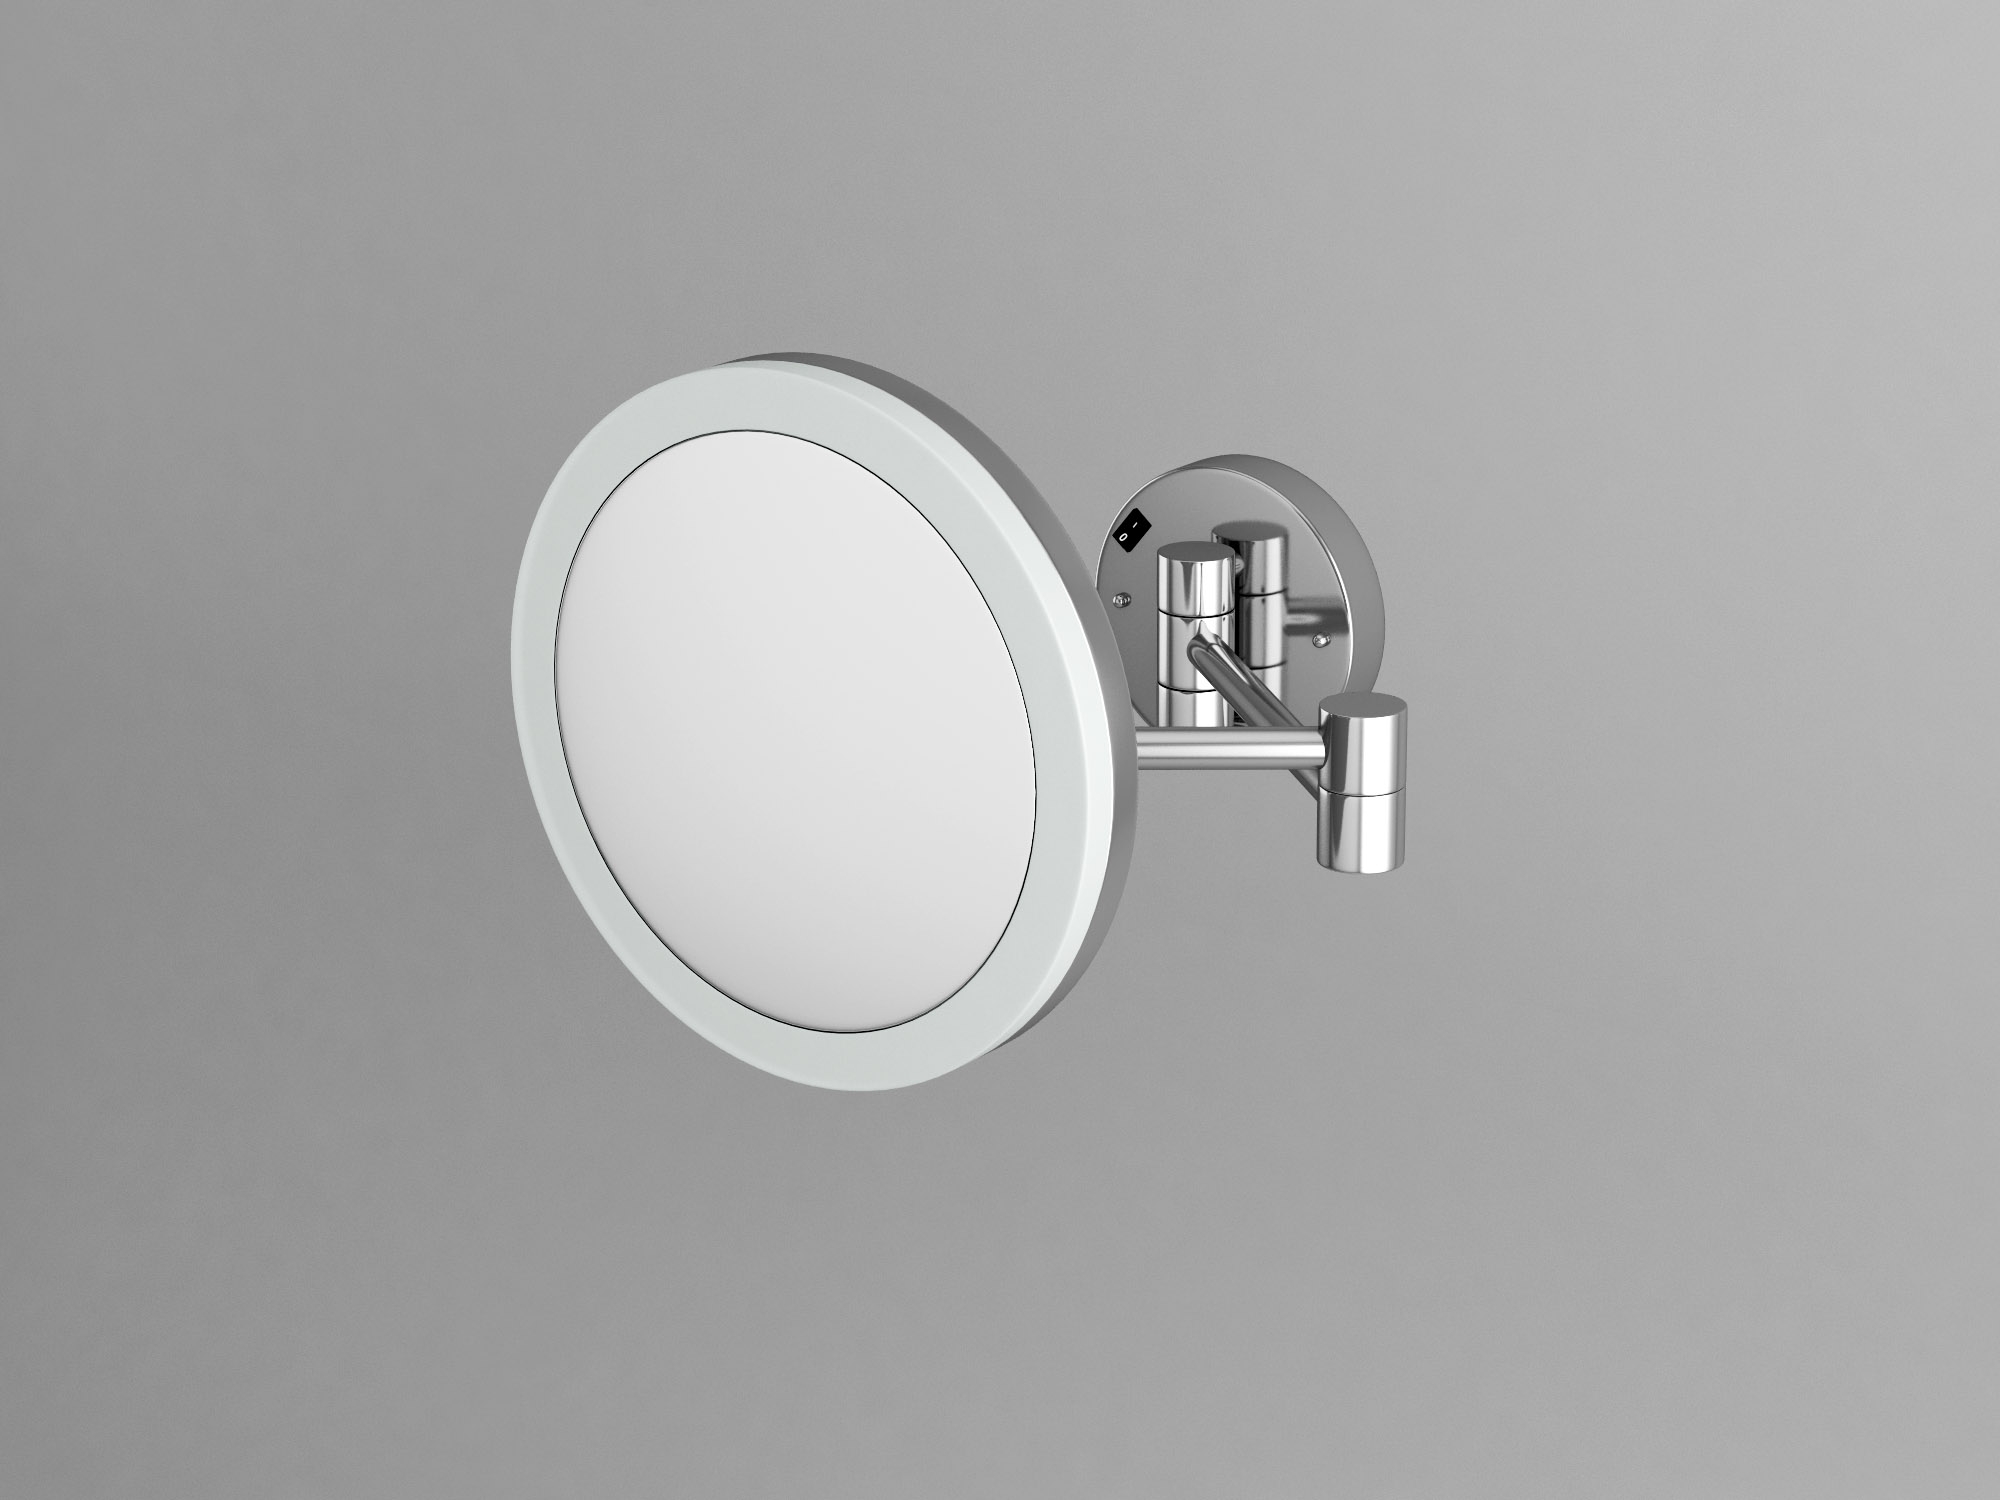 Отзывы (0) Зеркало с эффектом бесконечность (3D зеркало) для сенсорной комнаты TIA-SPORT